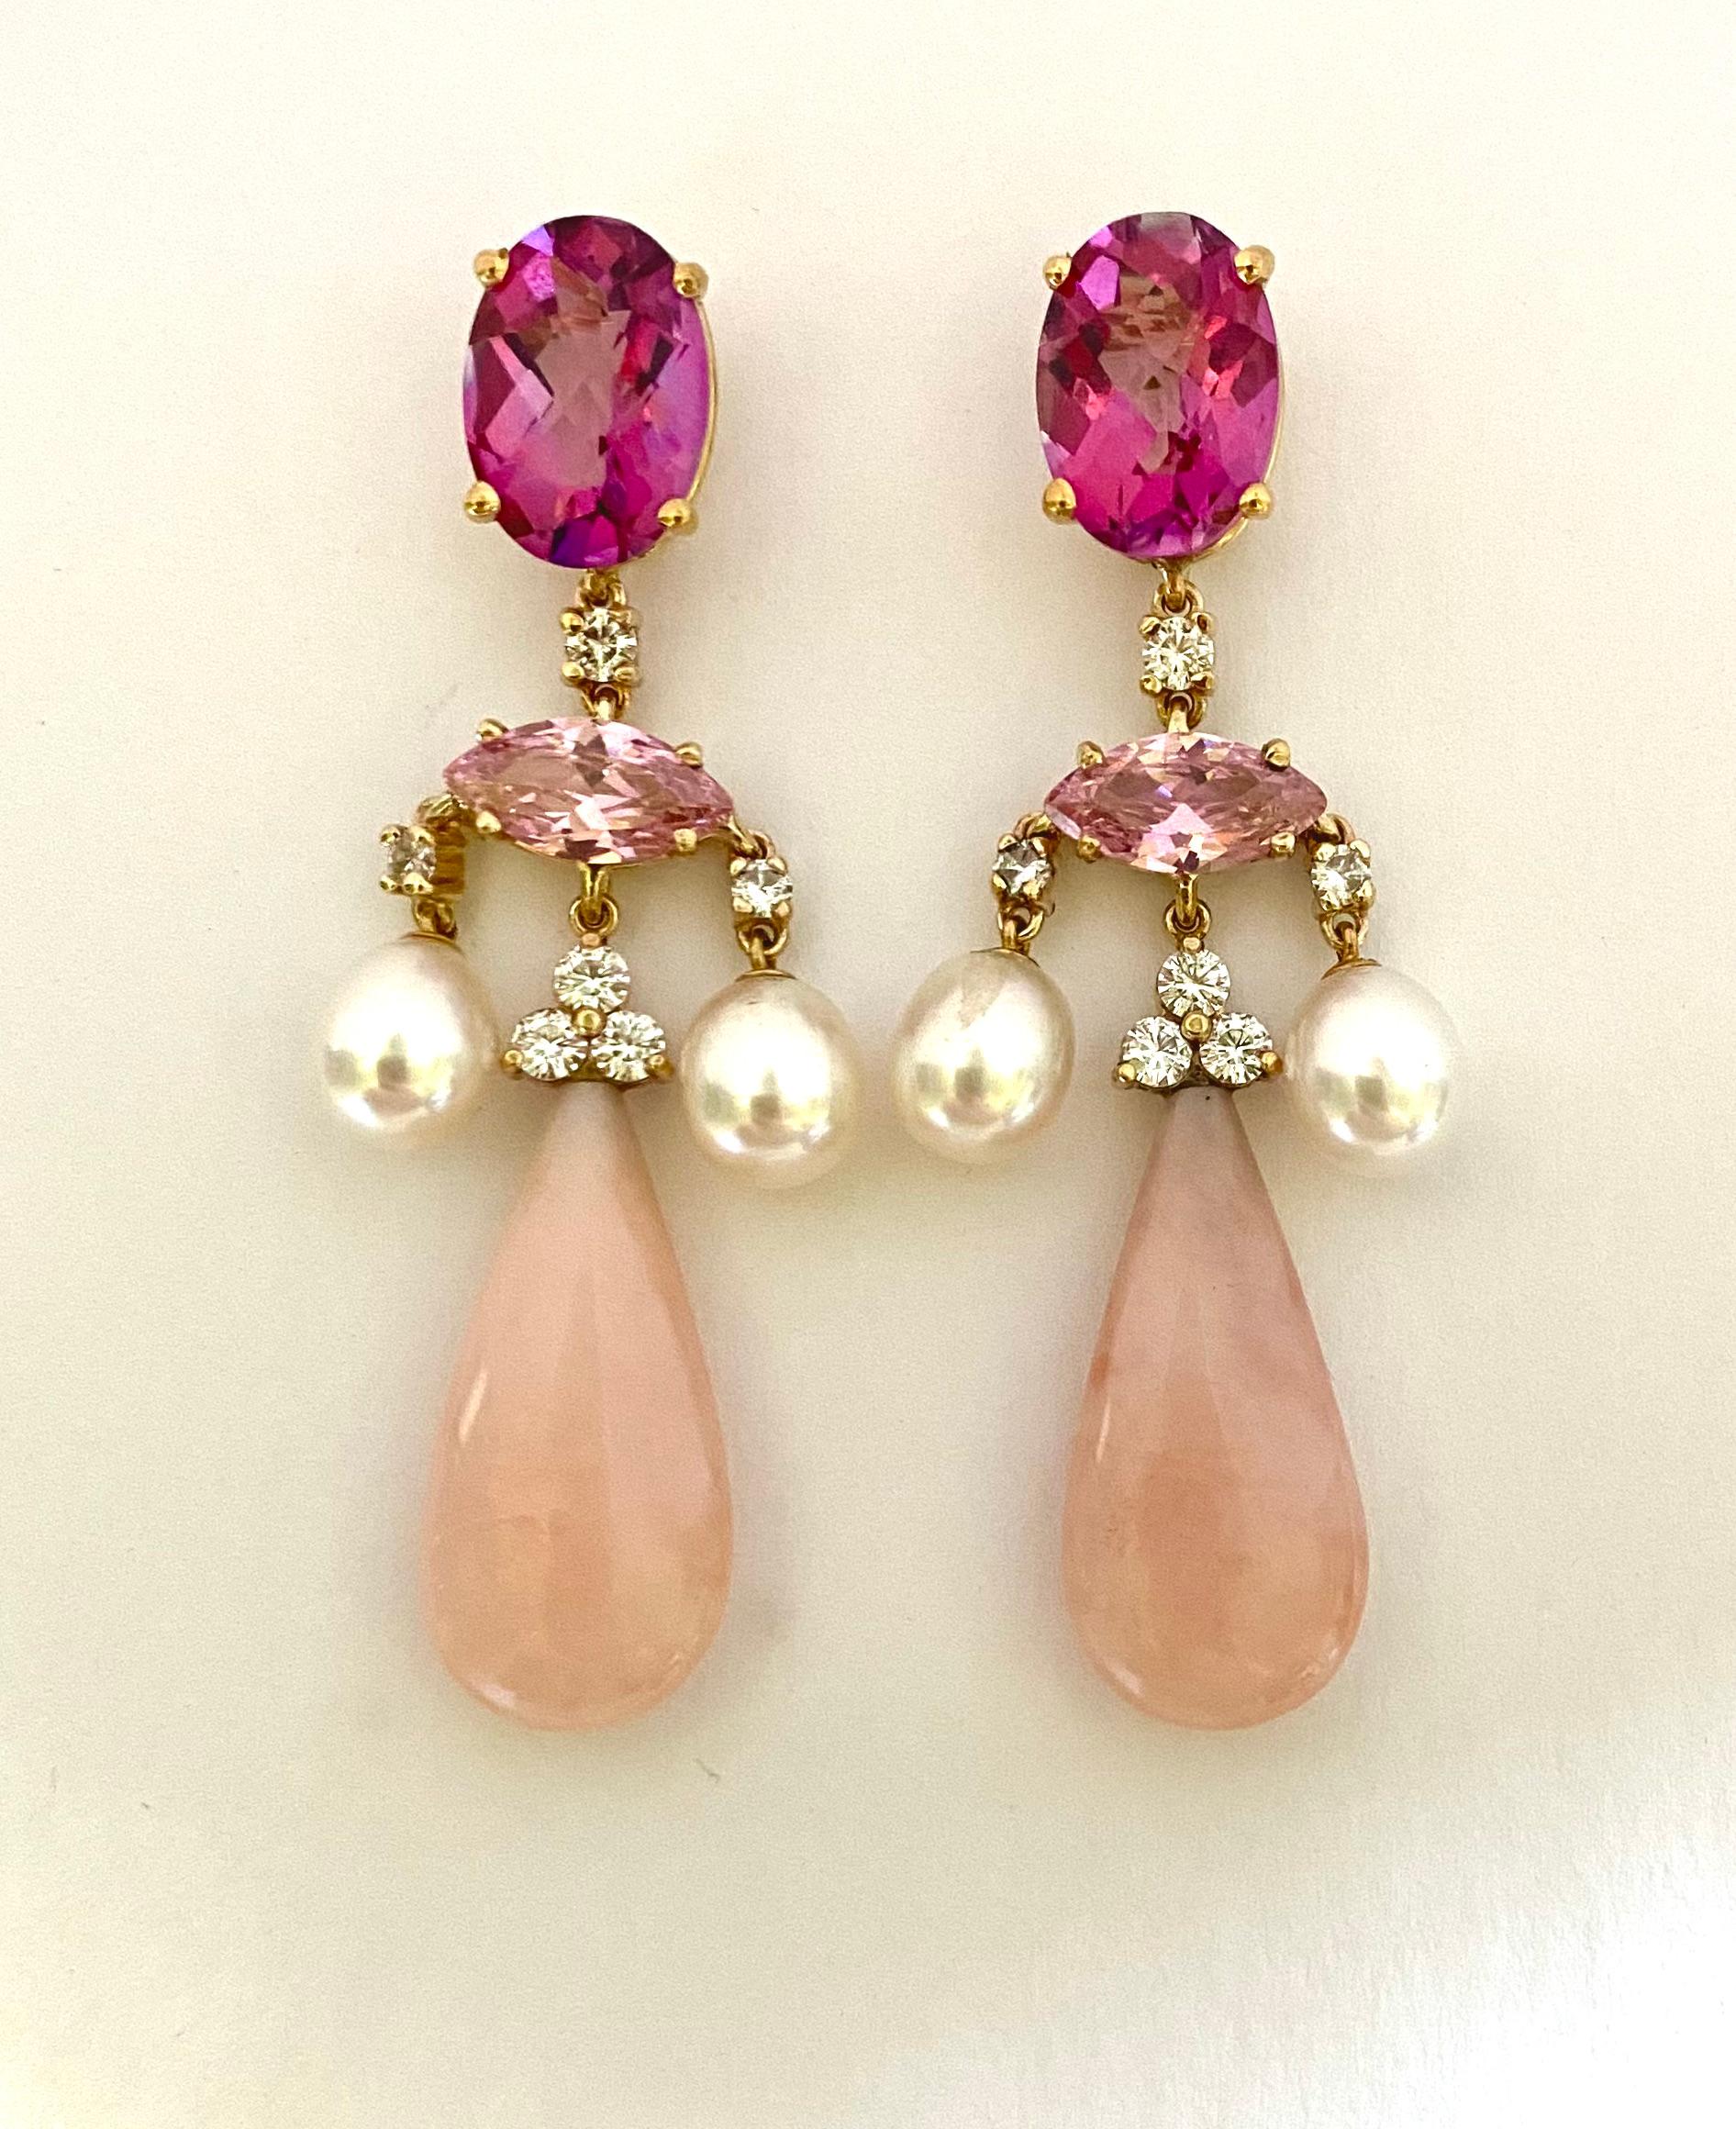 Contemporary Michael Kneebone Pink Topaz Pink Tourmaline Pink Opal Chandelier Earrings For Sale